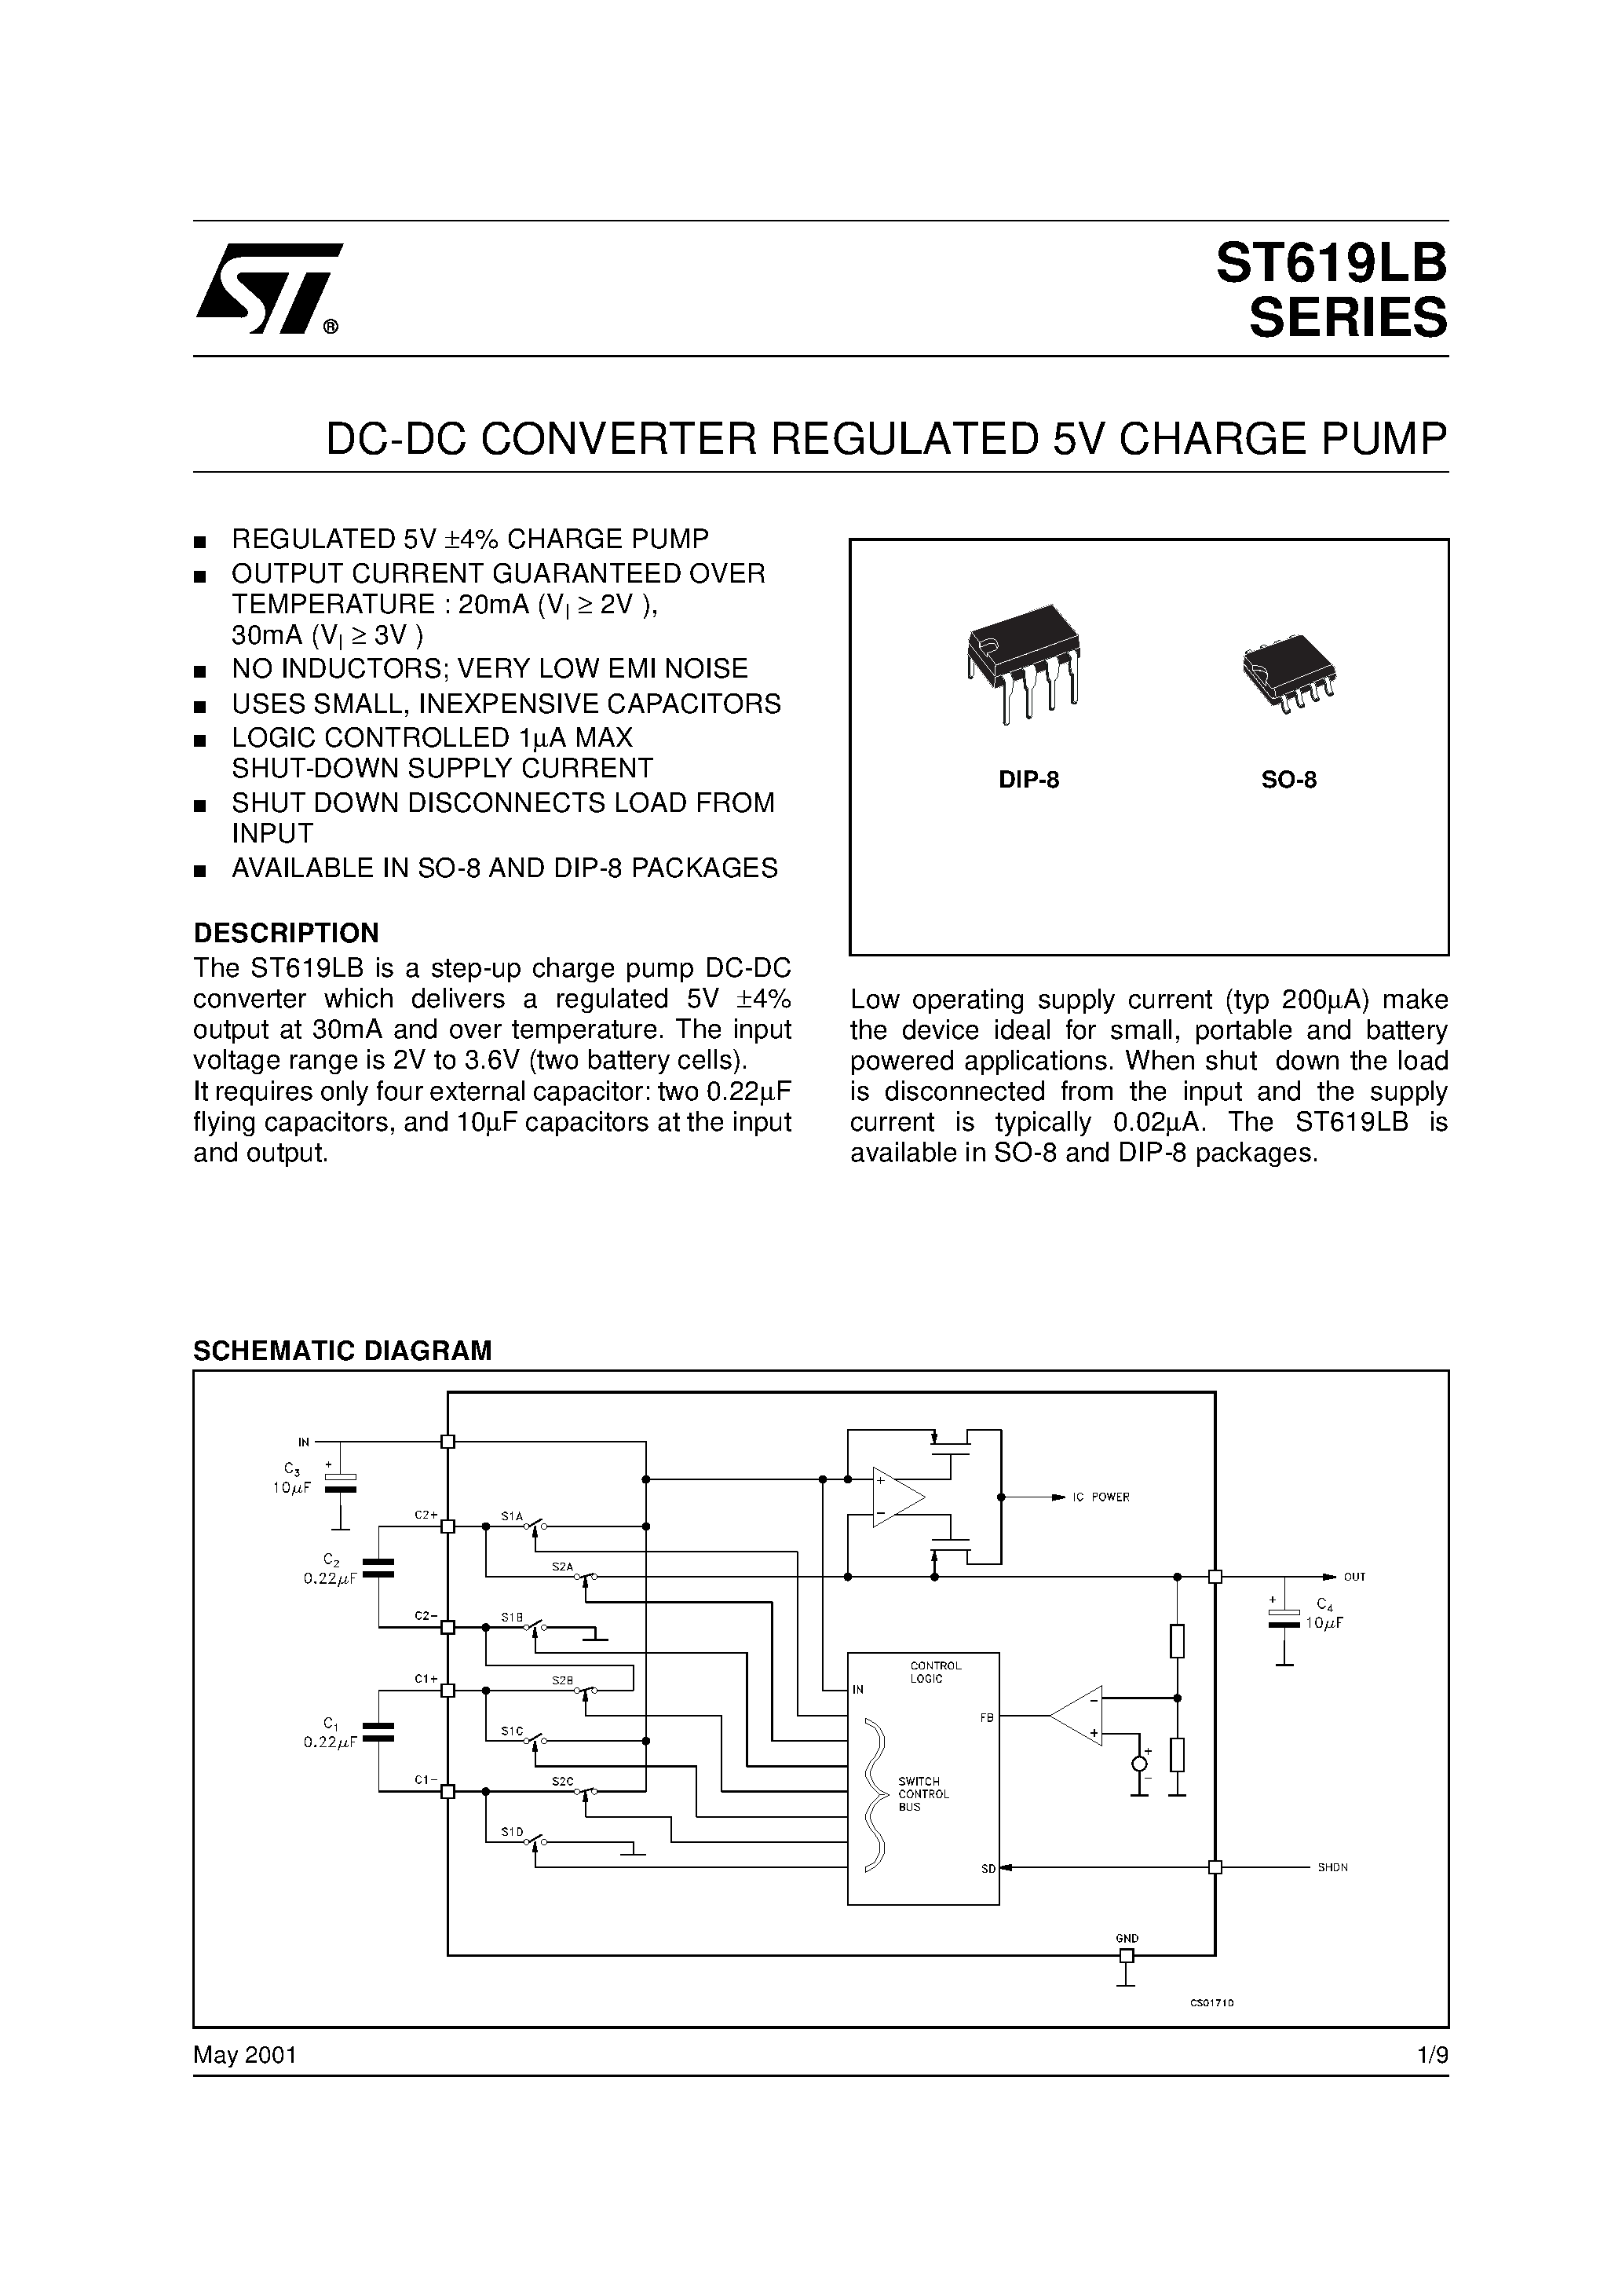 Даташит ST619LB - DC-DC CONVERTER REGULATED 5V CHARGE PUMP страница 1